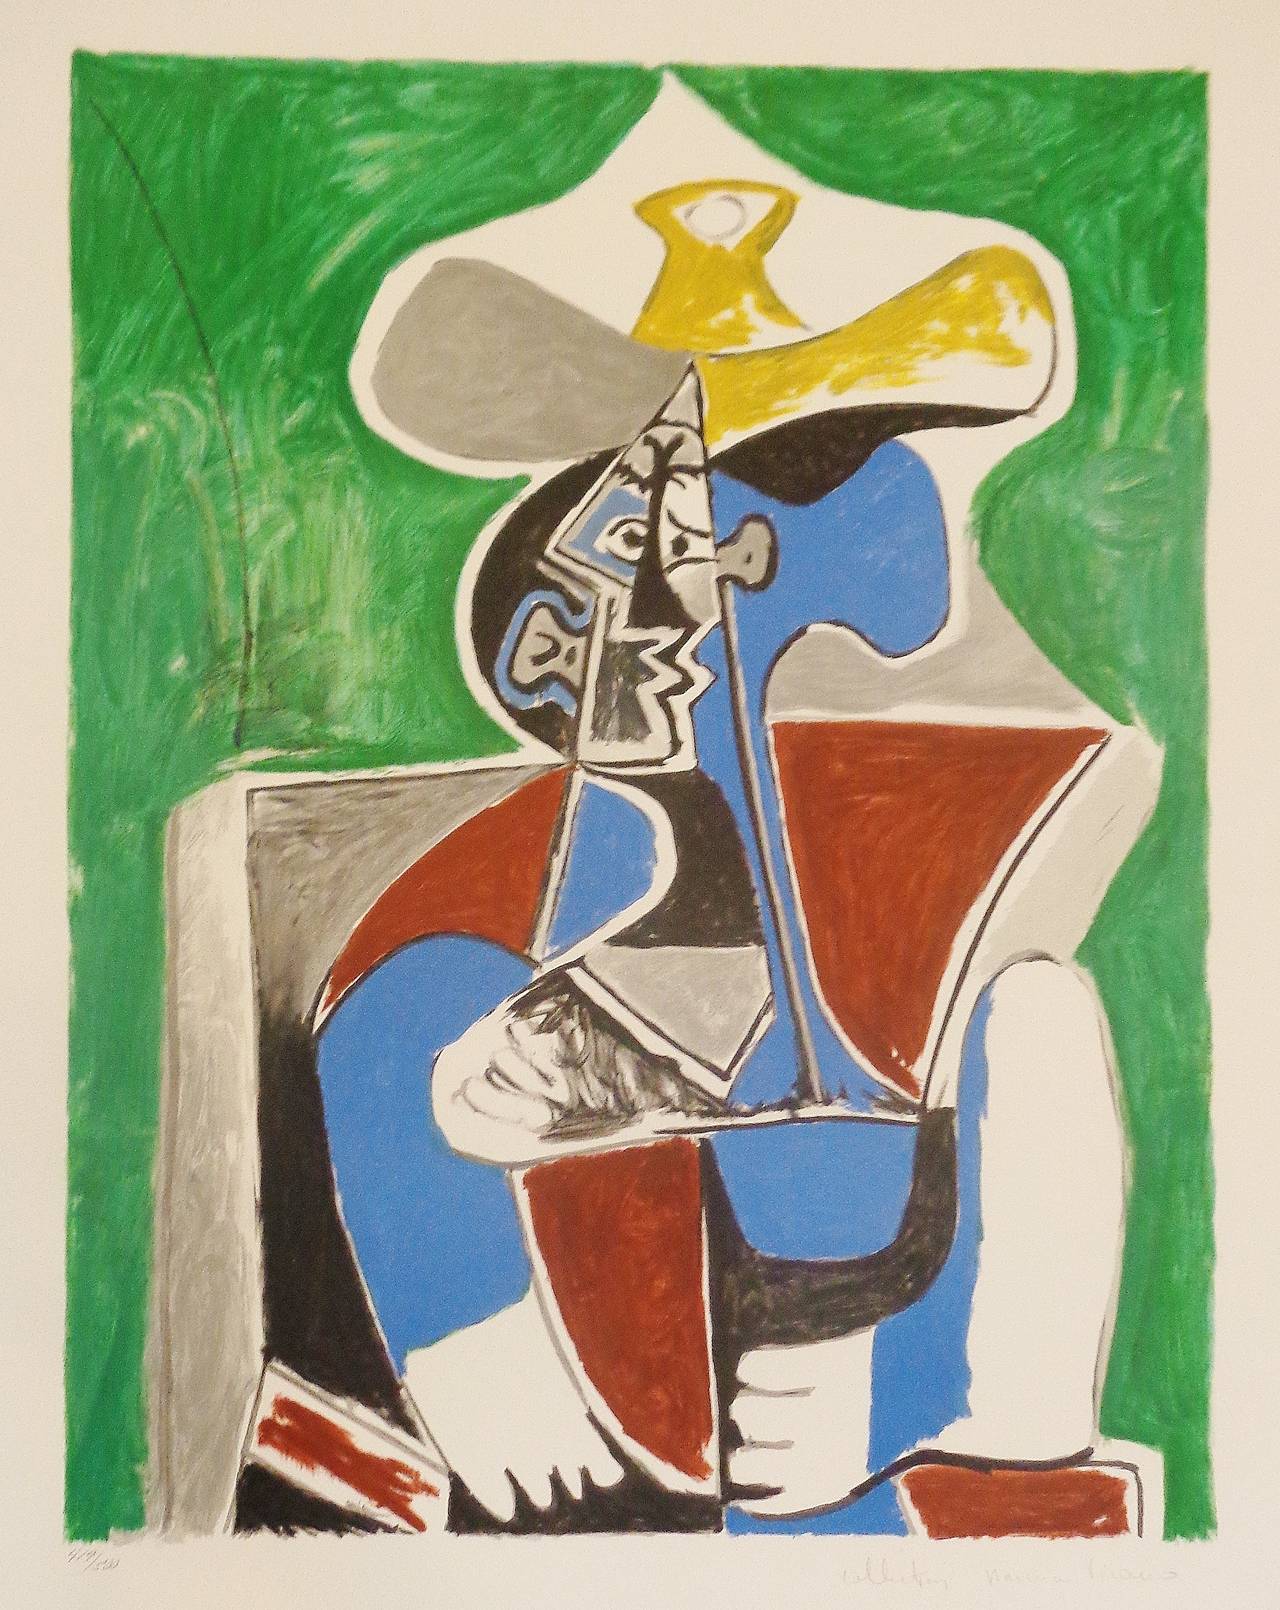 Pablo Picasso Abstract Print - Buste au Chapeau Jaune et Gris